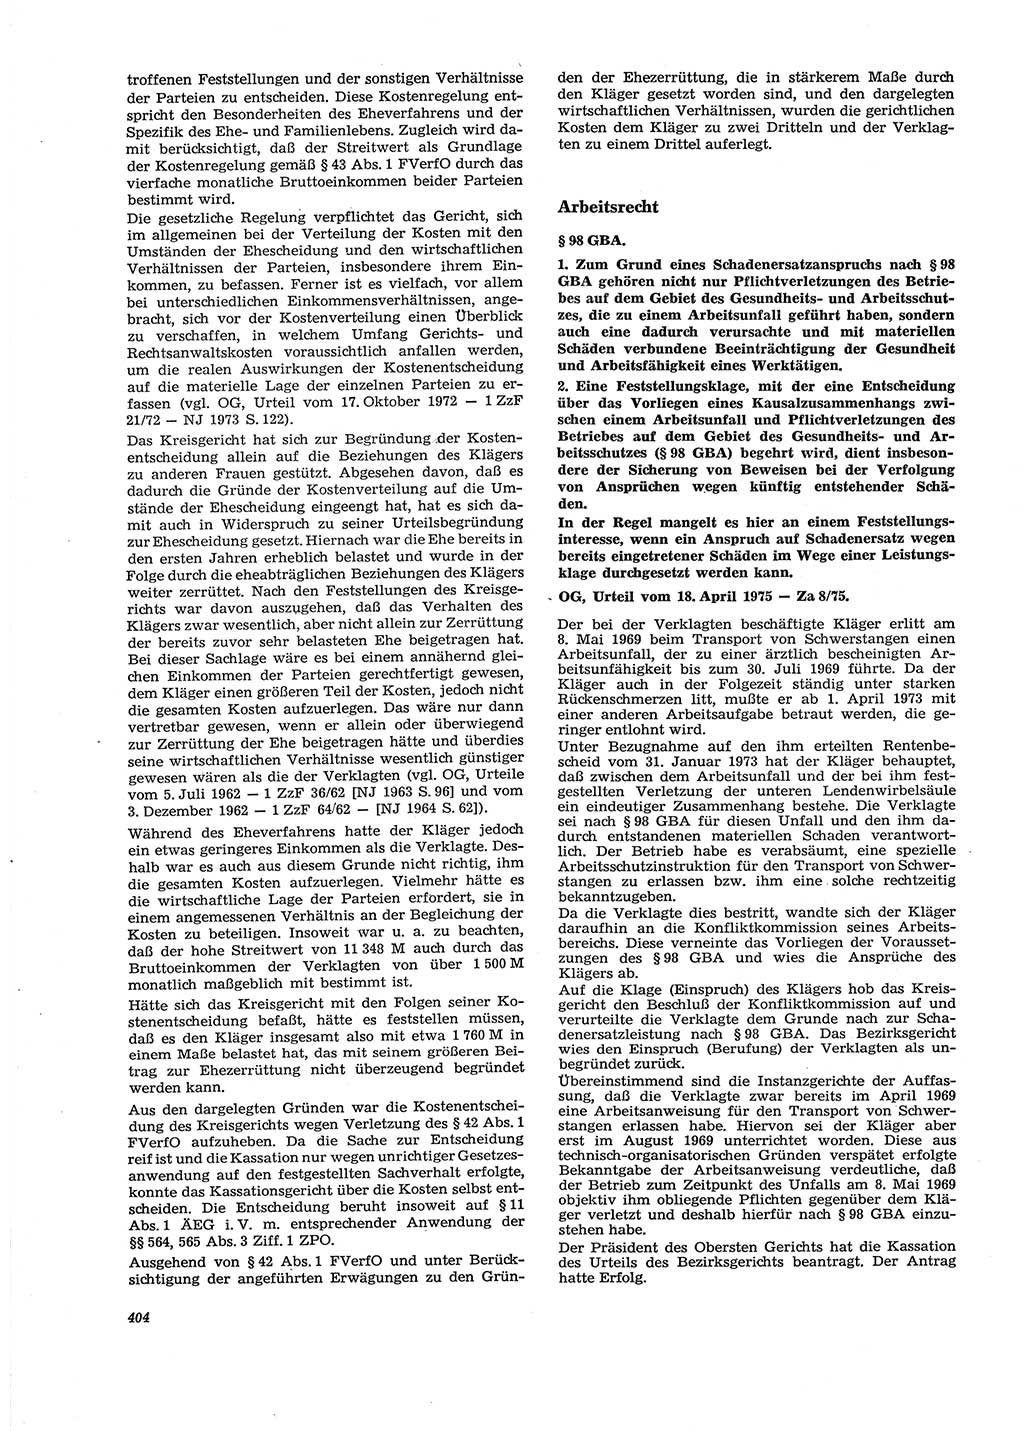 Neue Justiz (NJ), Zeitschrift für Recht und Rechtswissenschaft [Deutsche Demokratische Republik (DDR)], 29. Jahrgang 1975, Seite 404 (NJ DDR 1975, S. 404)